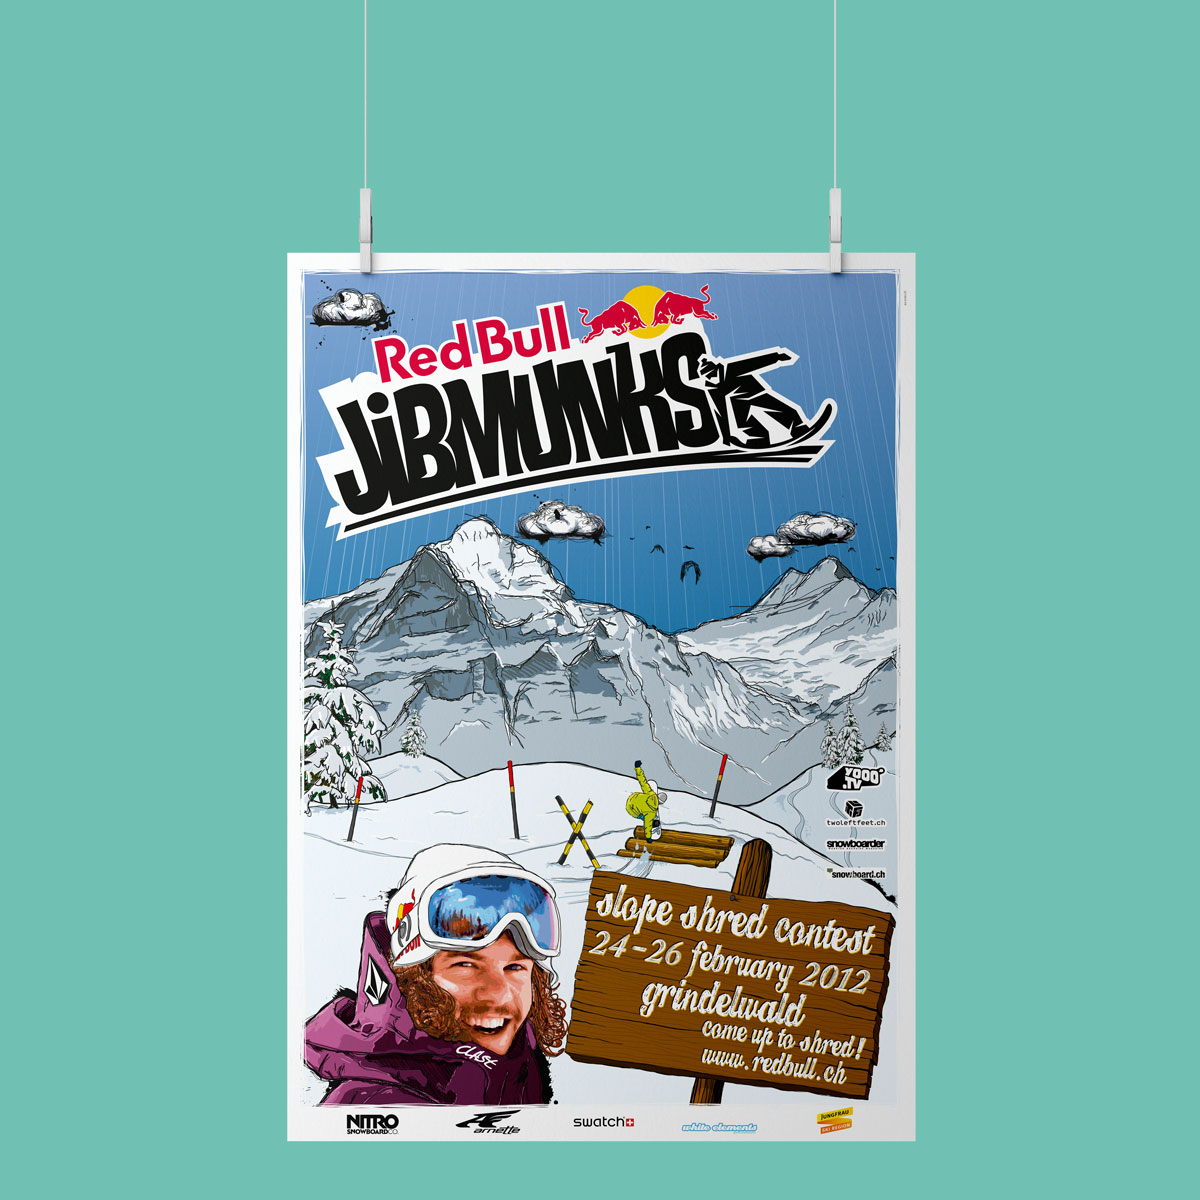 Simon_Baumann_Grafik_Logo_Illustration_Visual_Event_Interlaken_Thun_Bern_Red_Bull_Jibmunks